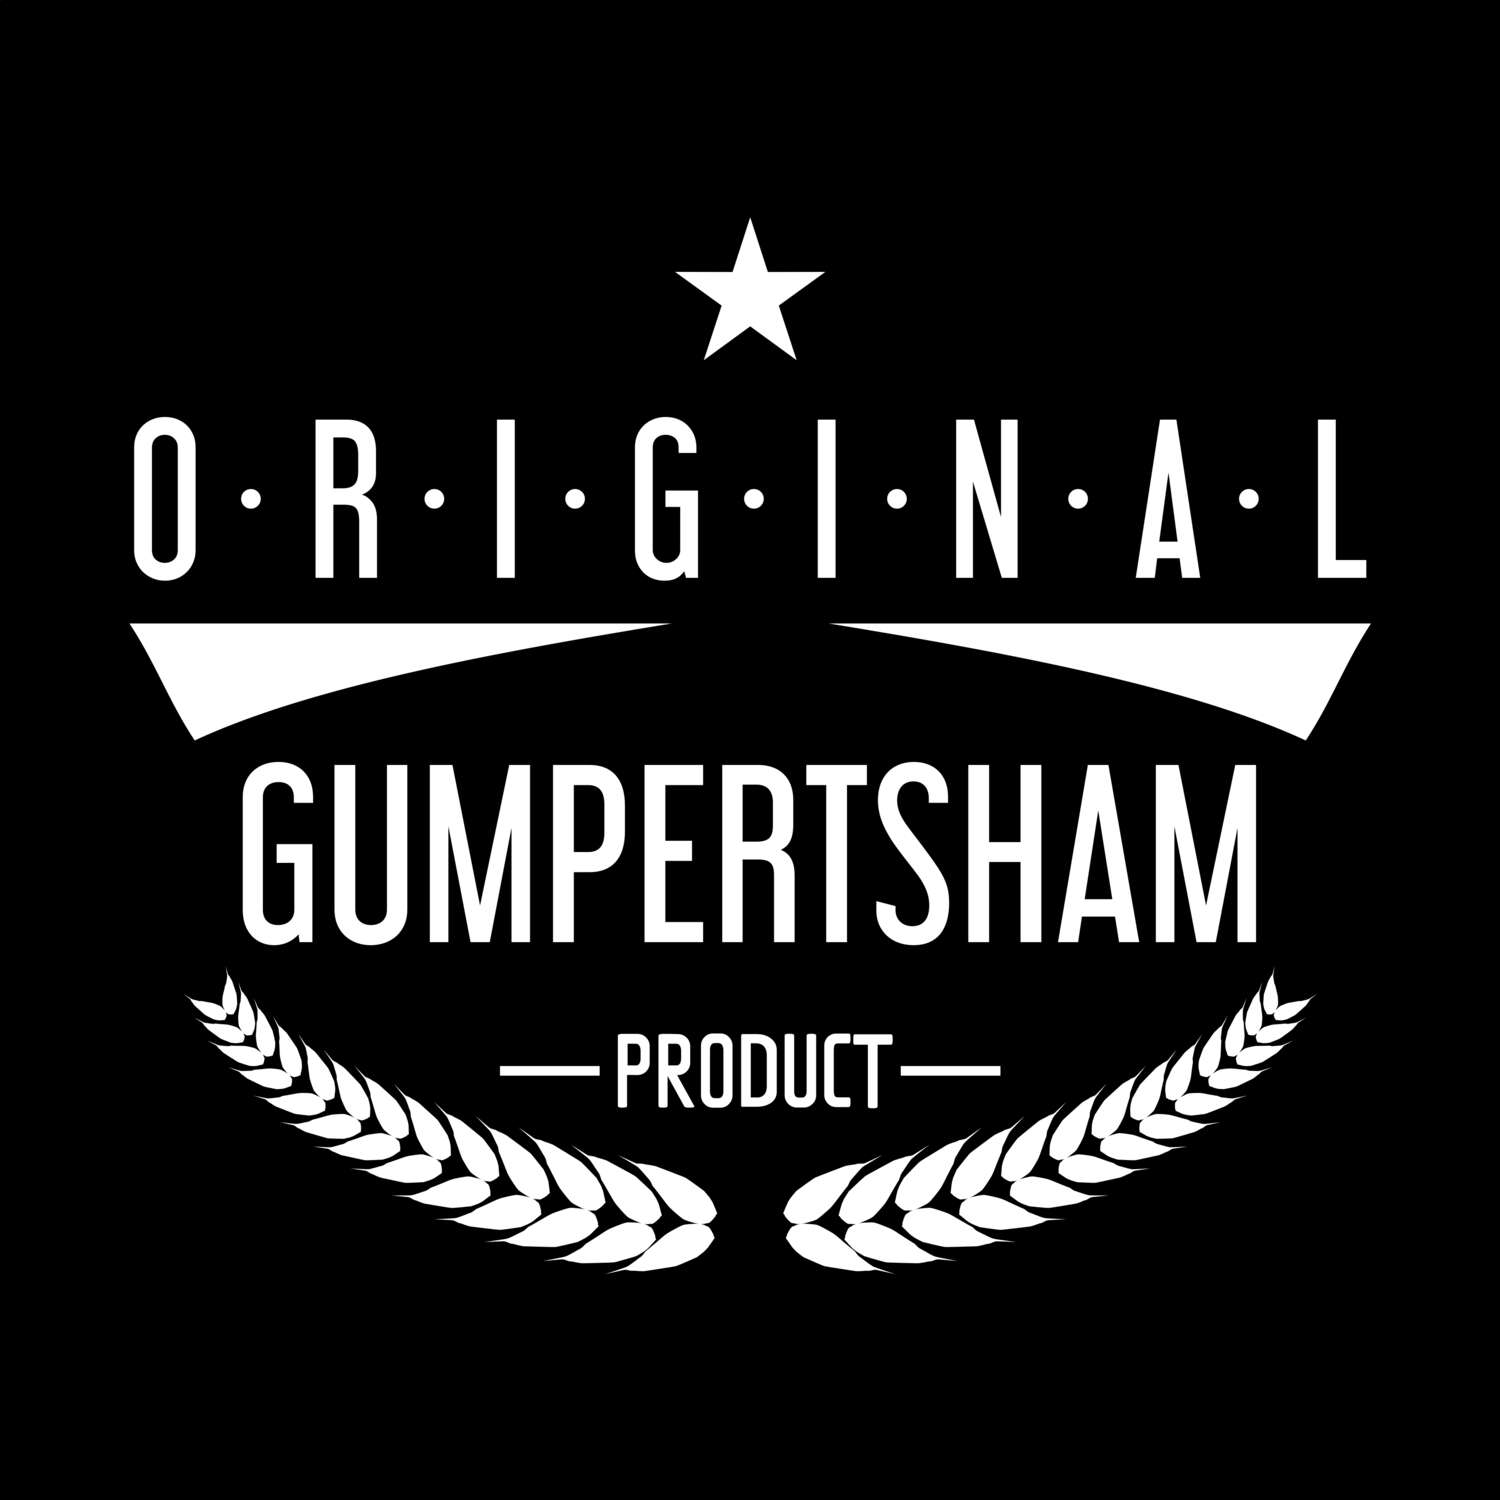 Gumpertsham T-Shirt »Original Product«